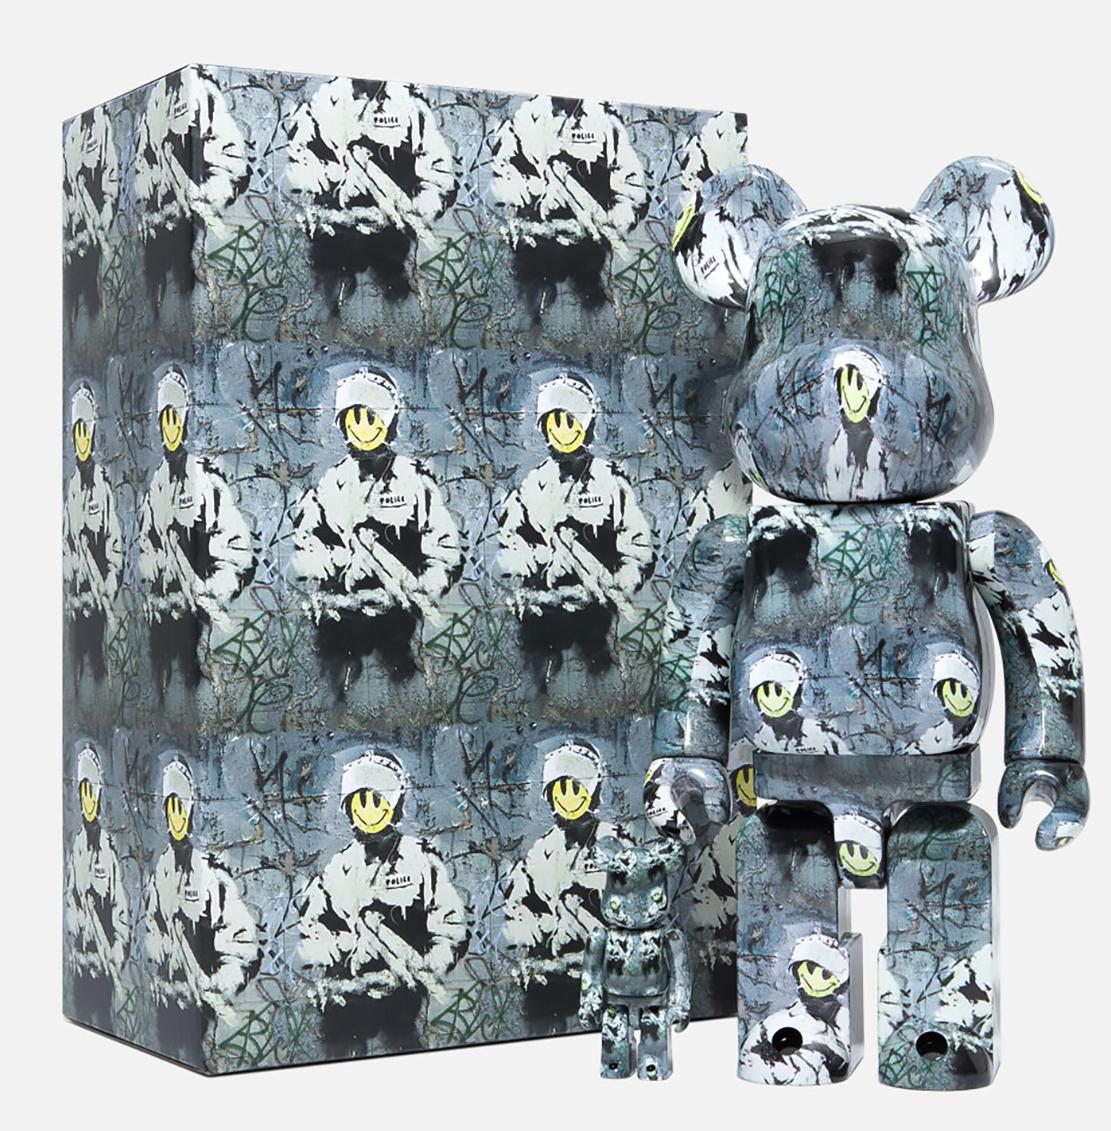 Bearbrick Riot Cop 400% Zahl:
Ein außergewöhnliches Bearbrick-Kunstspielzeug, inspiriert von Banksy's Riot Cop.

Medium: Vinyl Figur. 
Satz mit zwei Figuren. Abmessungen des größeren Stücks: 11 x 5 Zoll.
Zustand: Neu in seiner